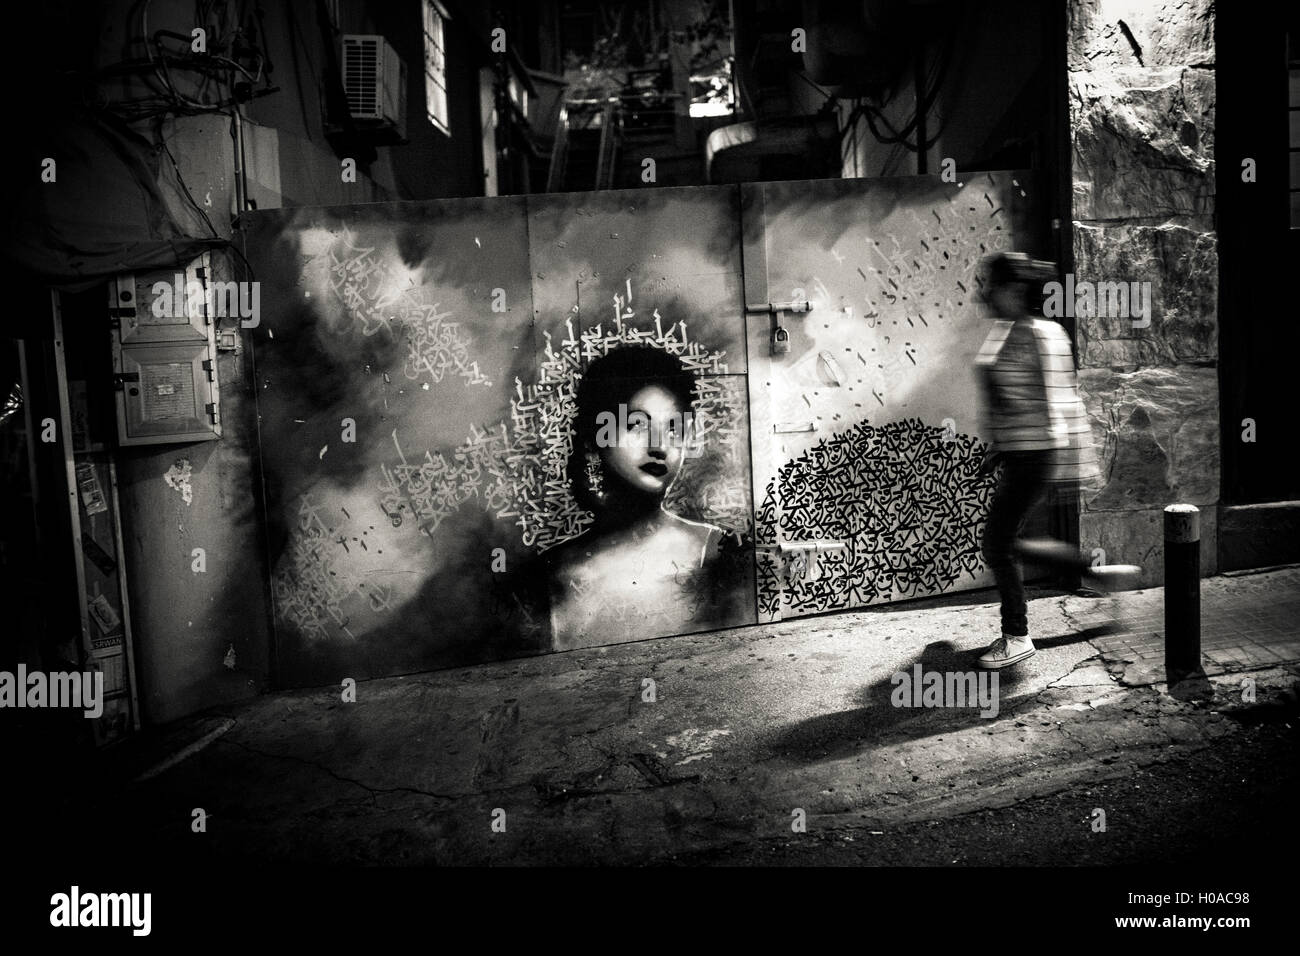 Les graffitis à Beyrouth - 10/03/2015 - Liban / Beyrouth - Gemayze, Beyrouth, mars 2015. Actrice égyptienne Asmahan par Yazan Halwani. Derrière ces portes il y a une galerie d'art indépendants moins un. - Bilal Tarabey / Le Pictorium Banque D'Images